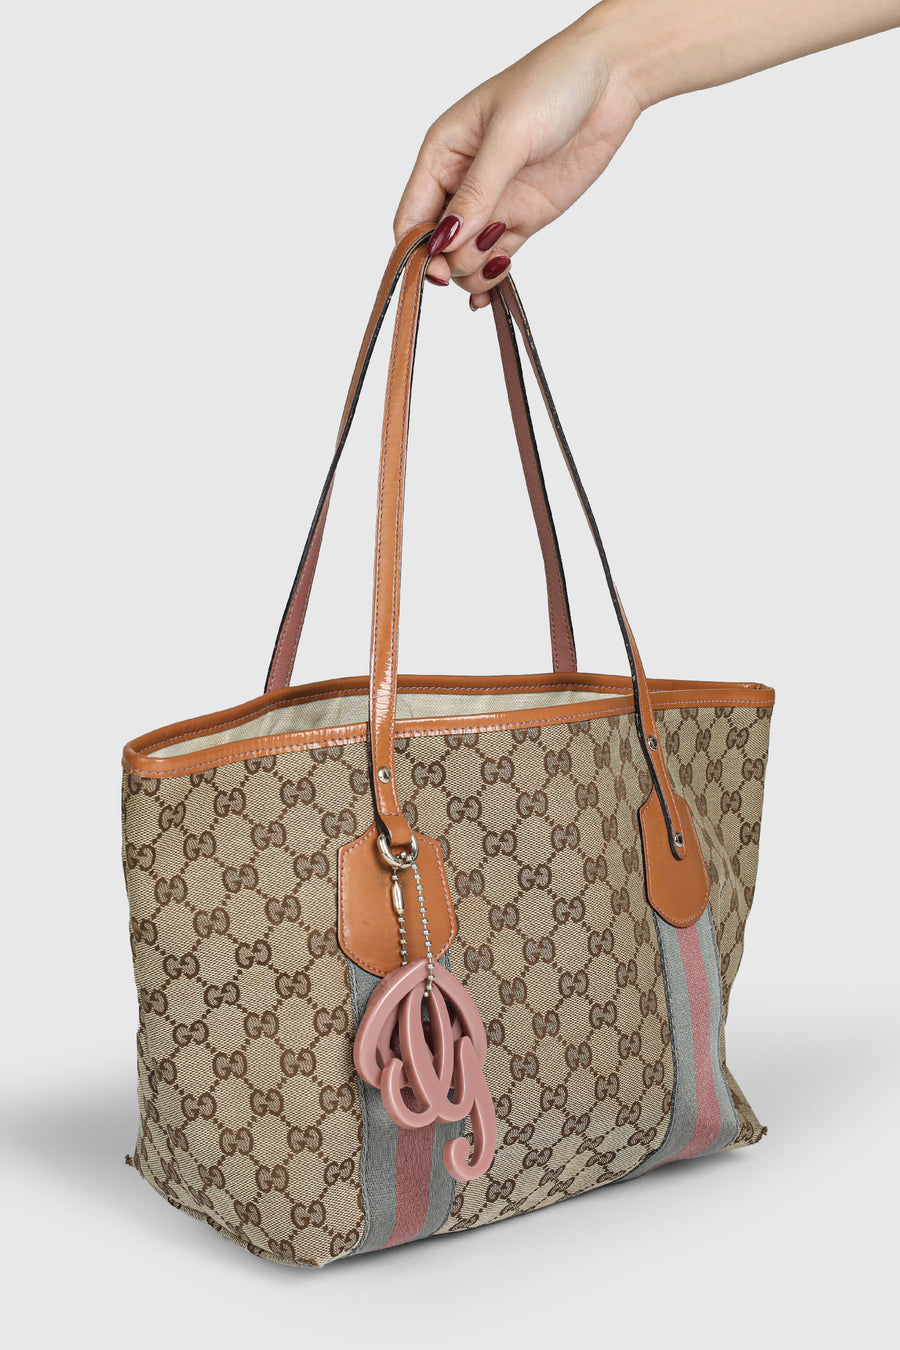 Lot 192: 4 Vintage Gucci Handbags | Case Auctions